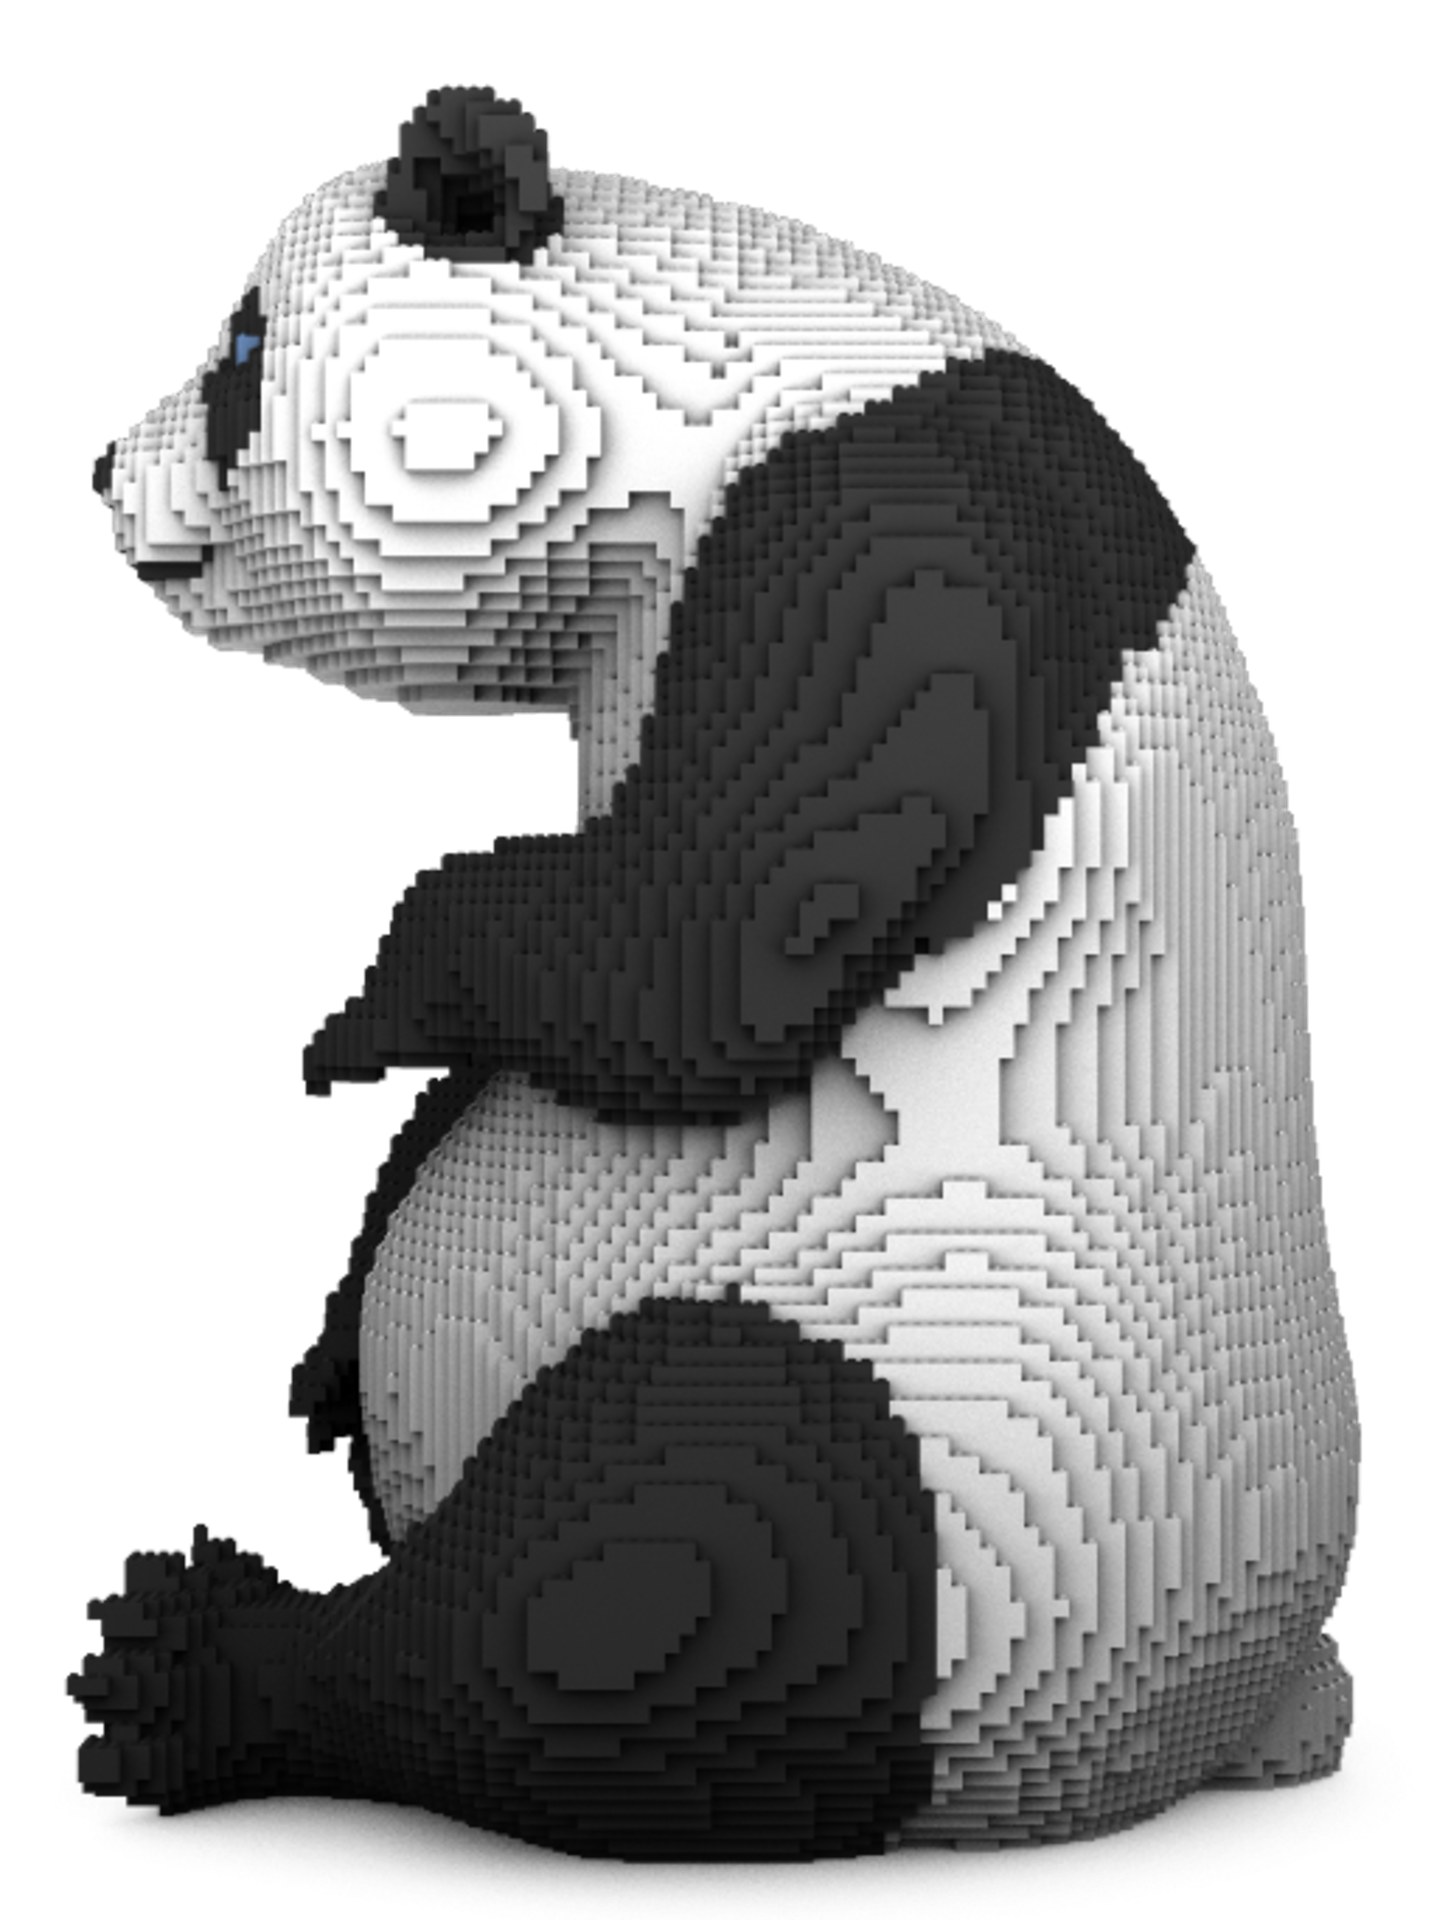 Panda - Image 7 of 8